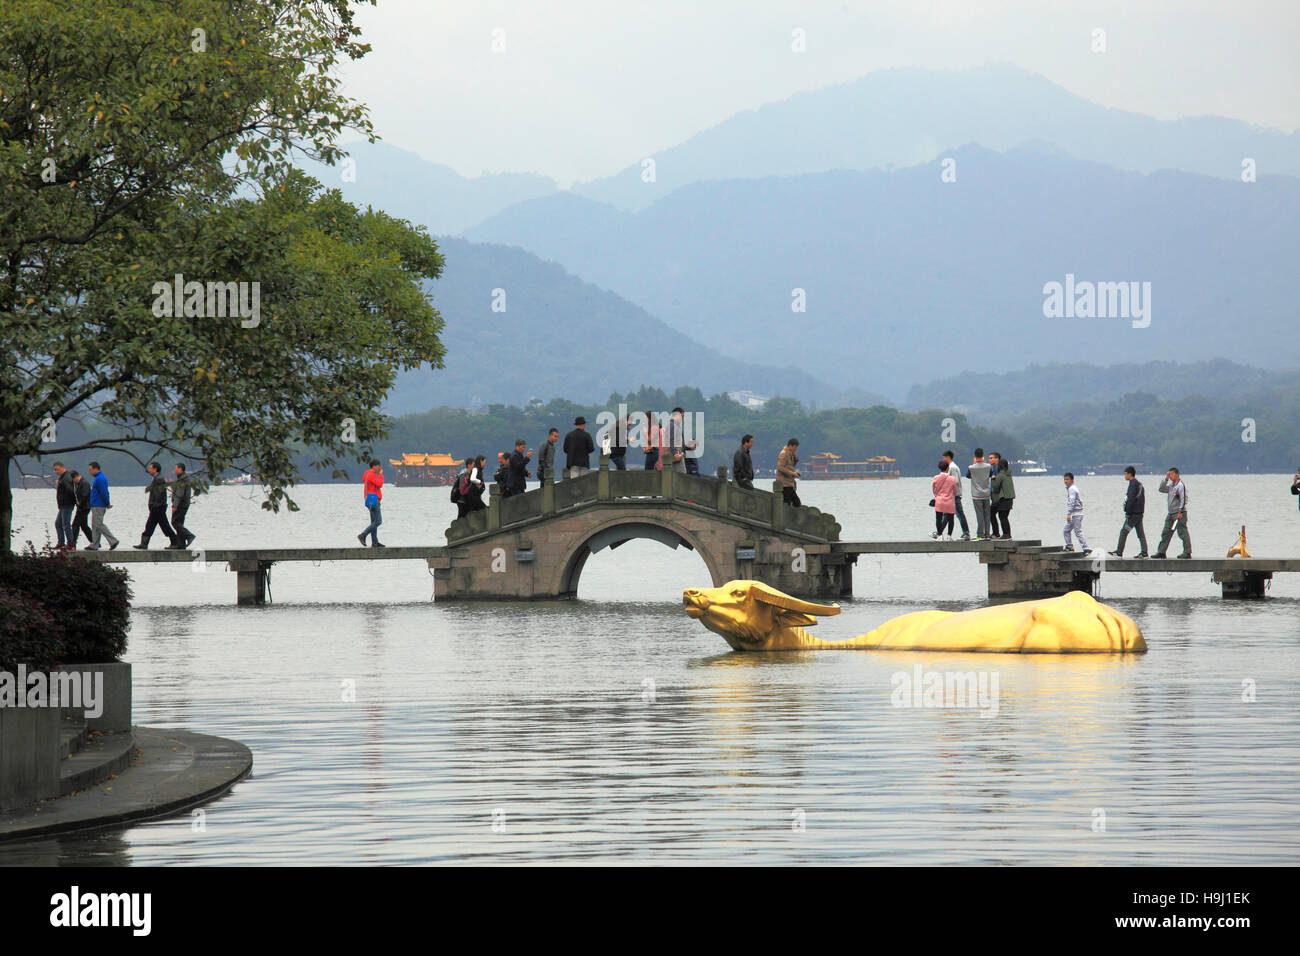 China, Zhejiang, Hangzhou, West Lake, Golden Buffalo statue, people, Stock Photo